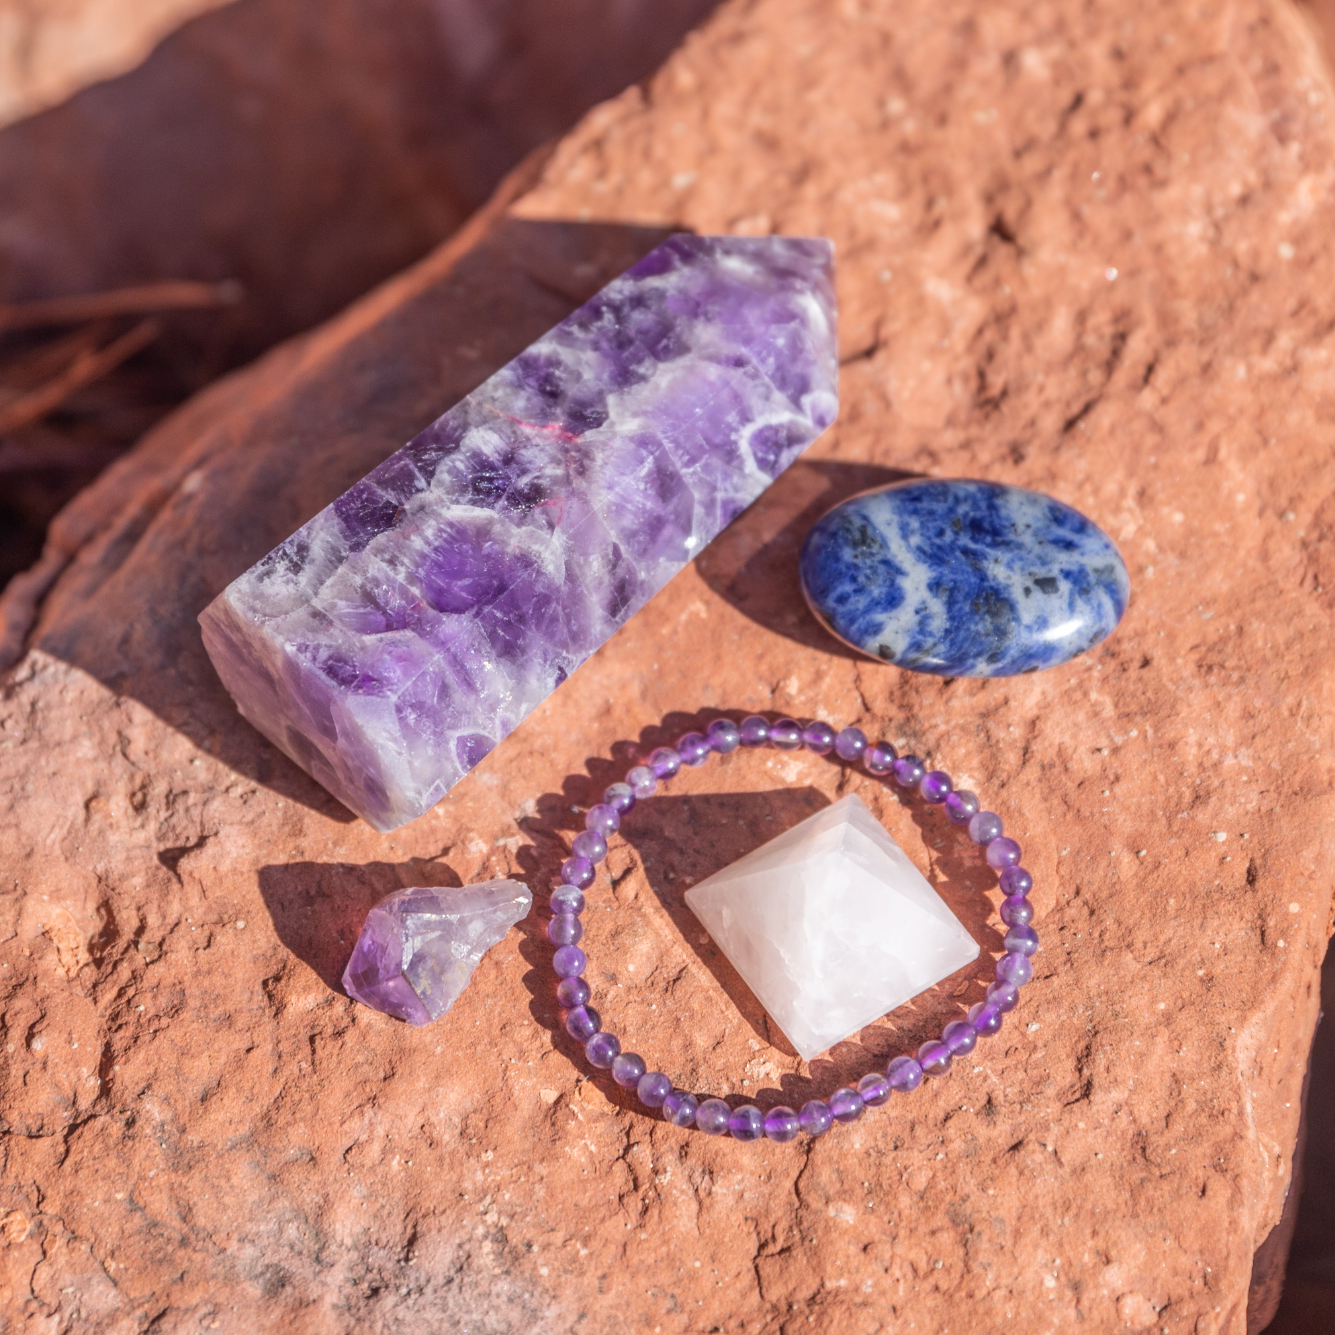 healing crystals: a bundle of crystals used to help with sleep in sedona, arizona